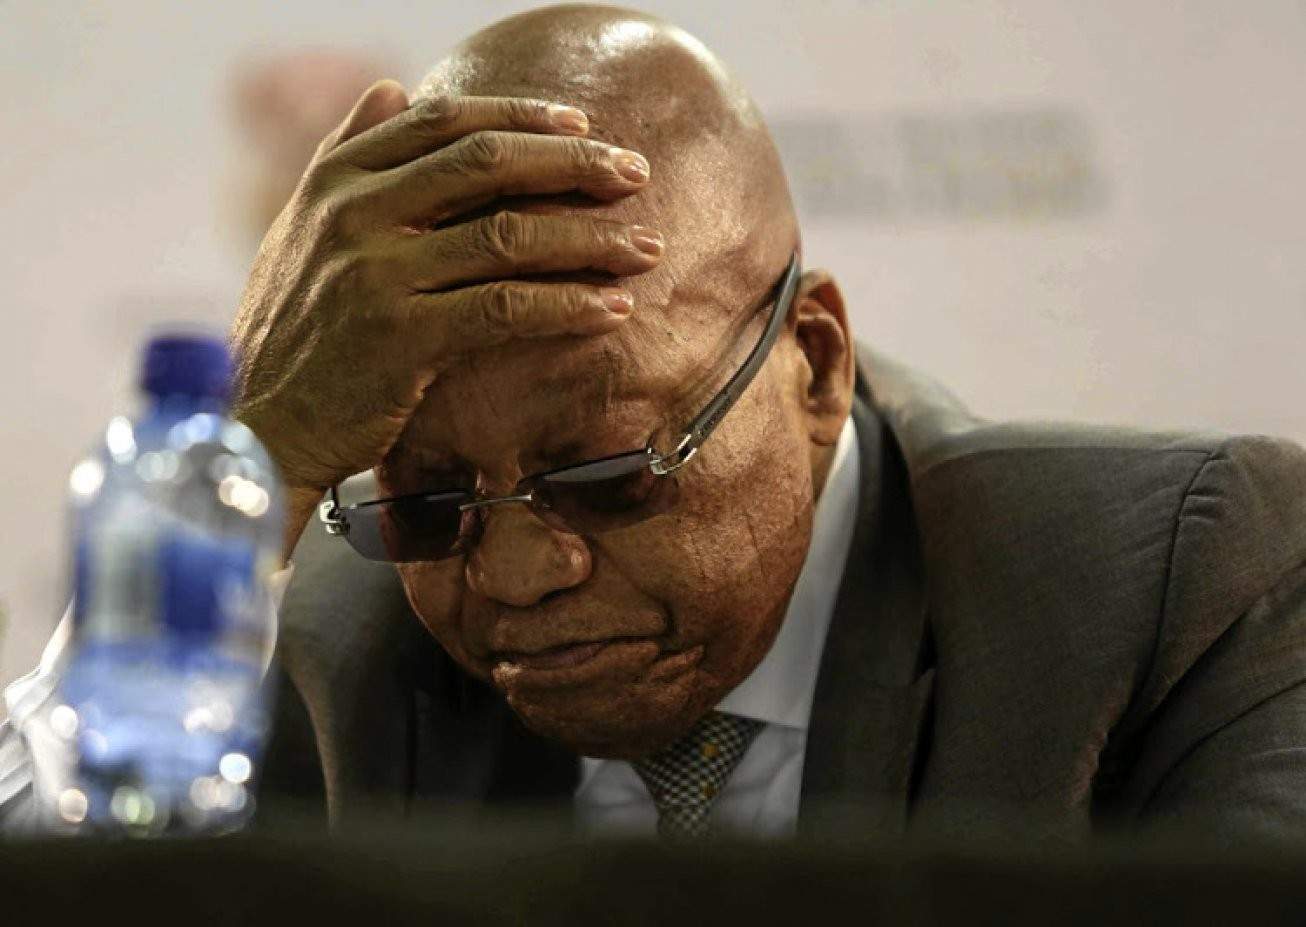 AFRIQUE DU SUD: Jacob Zuma de retour devant la justice, gagne du temps